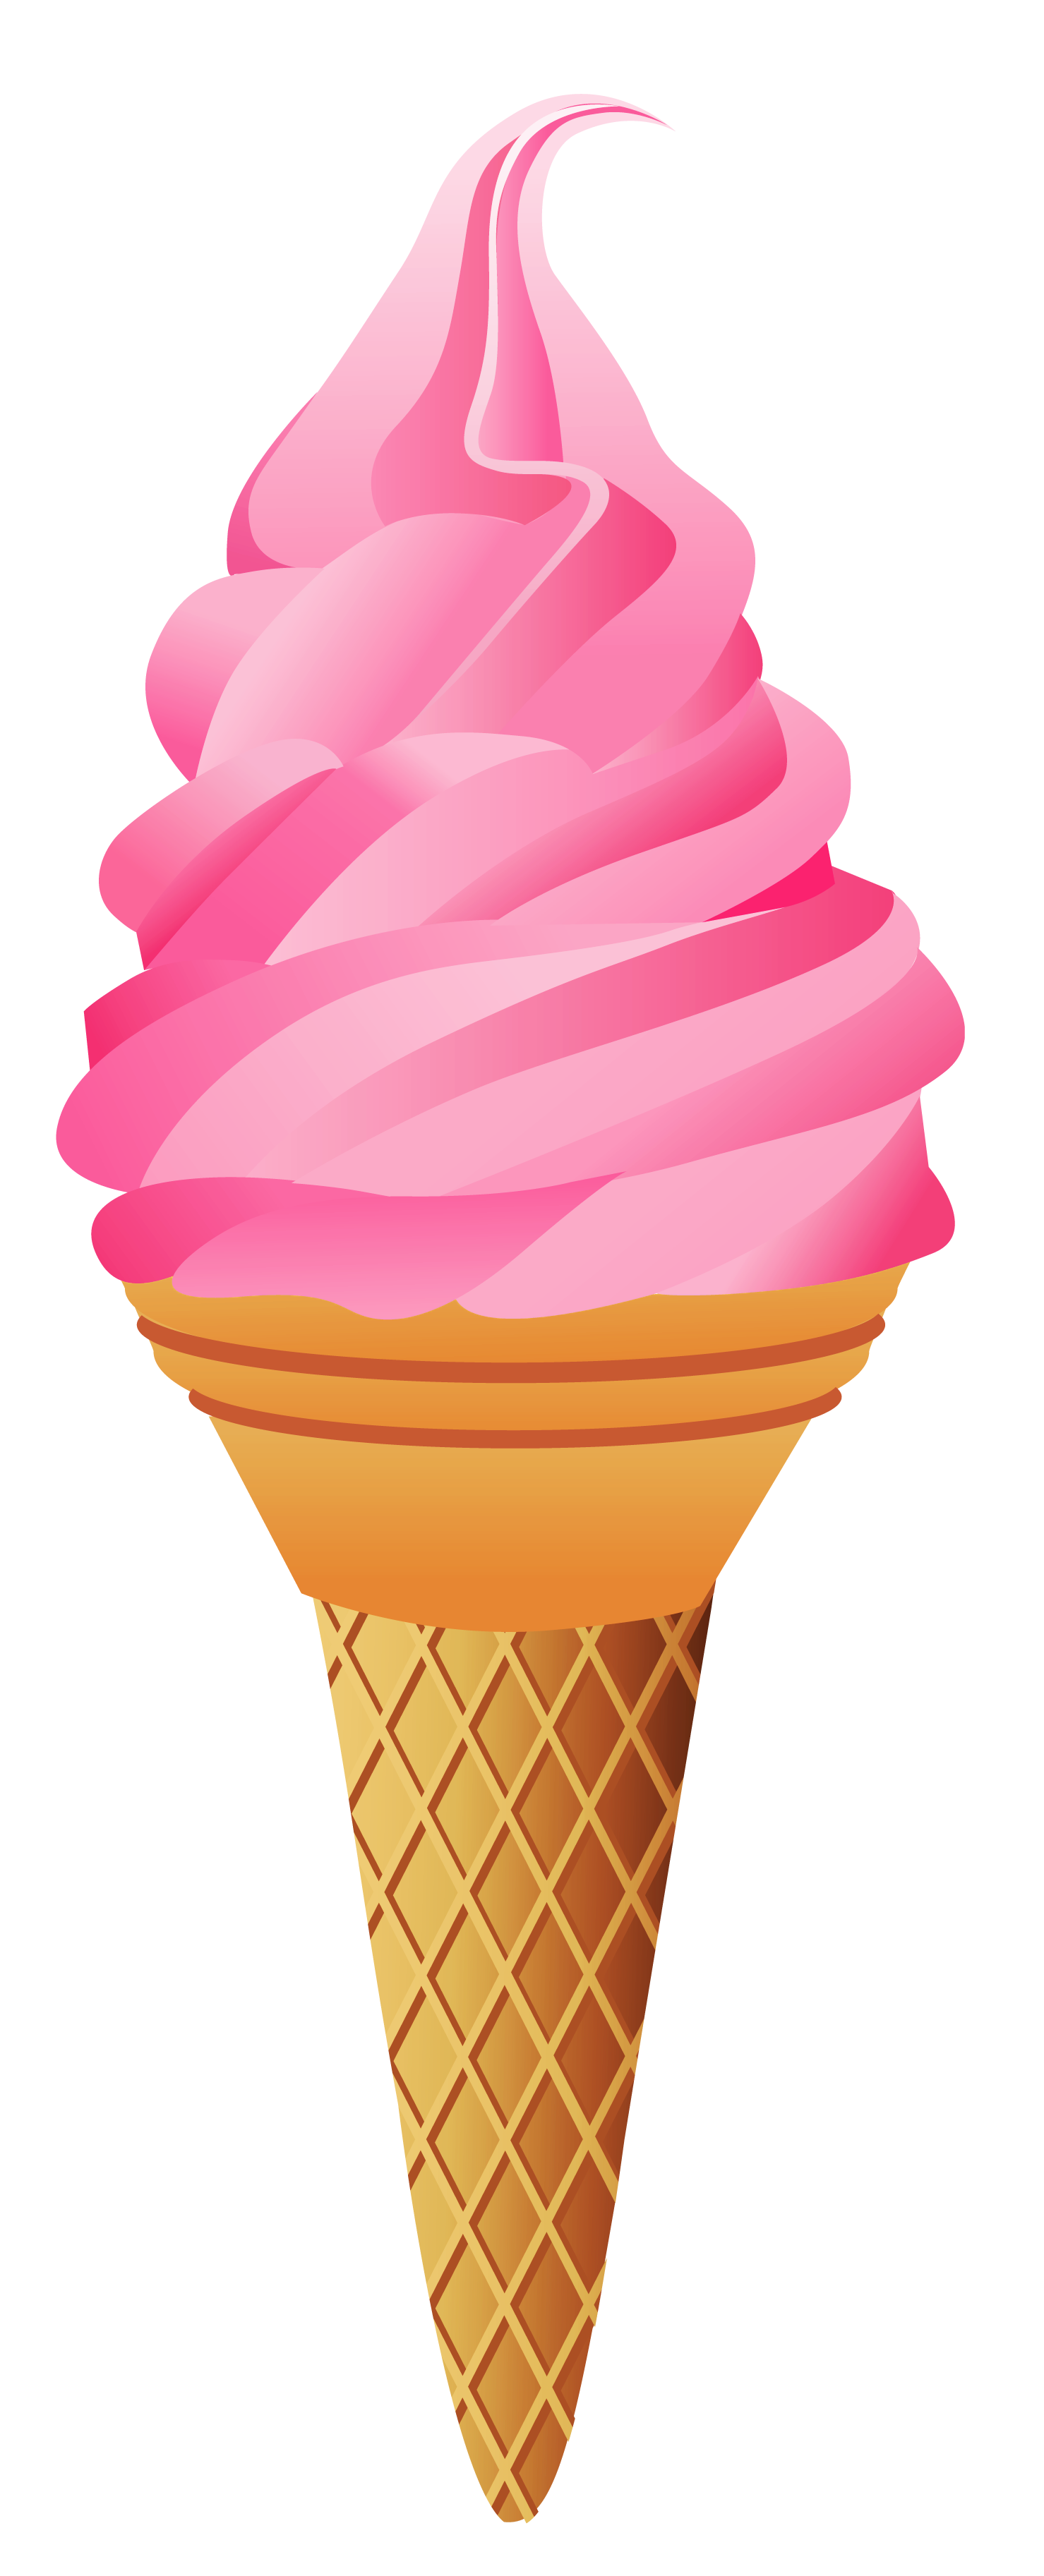 Ice cream cone ice cream no cone clipart clipartfest